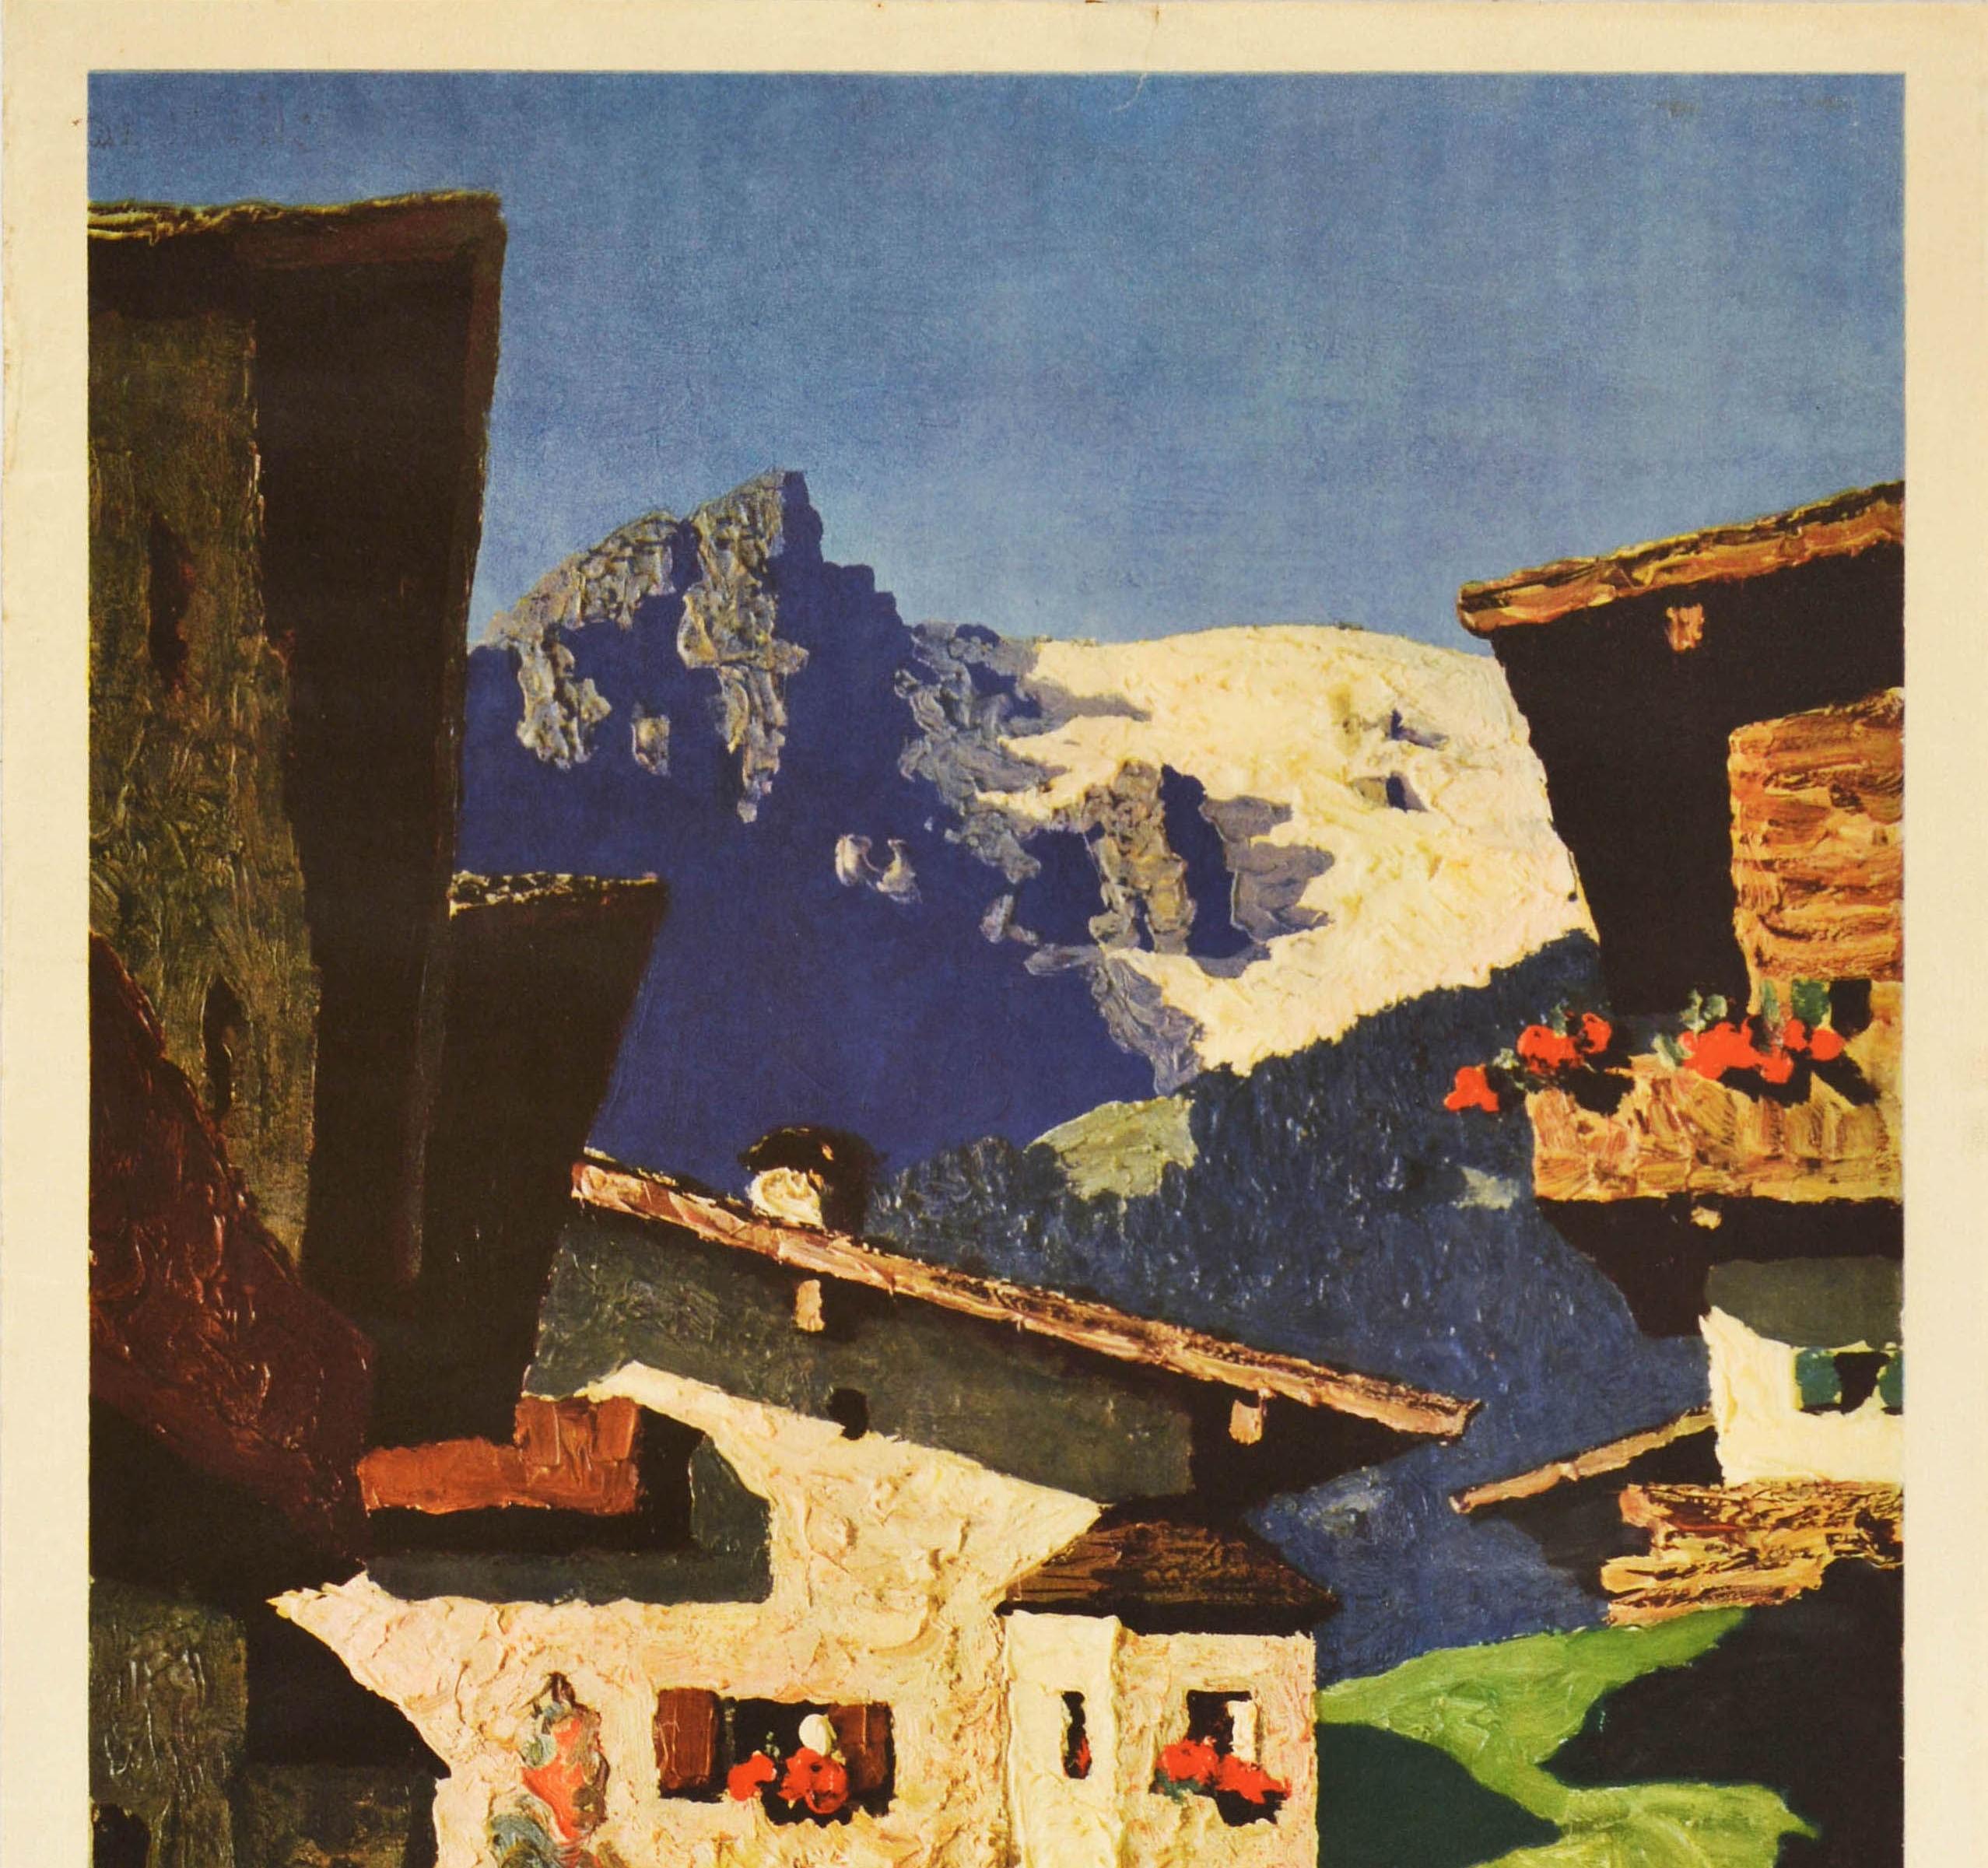 Original-Reiseplakat für Tirol mit einem atemberaubenden Kunstwerk des österreichischen Künstlers Alfons Walde (1891-1958), das Menschen zeigt, die an traditionellen Gebäuden in der kleinen mittelalterlichen Stadt Kitzbühel vorbeigehen, mit Blick